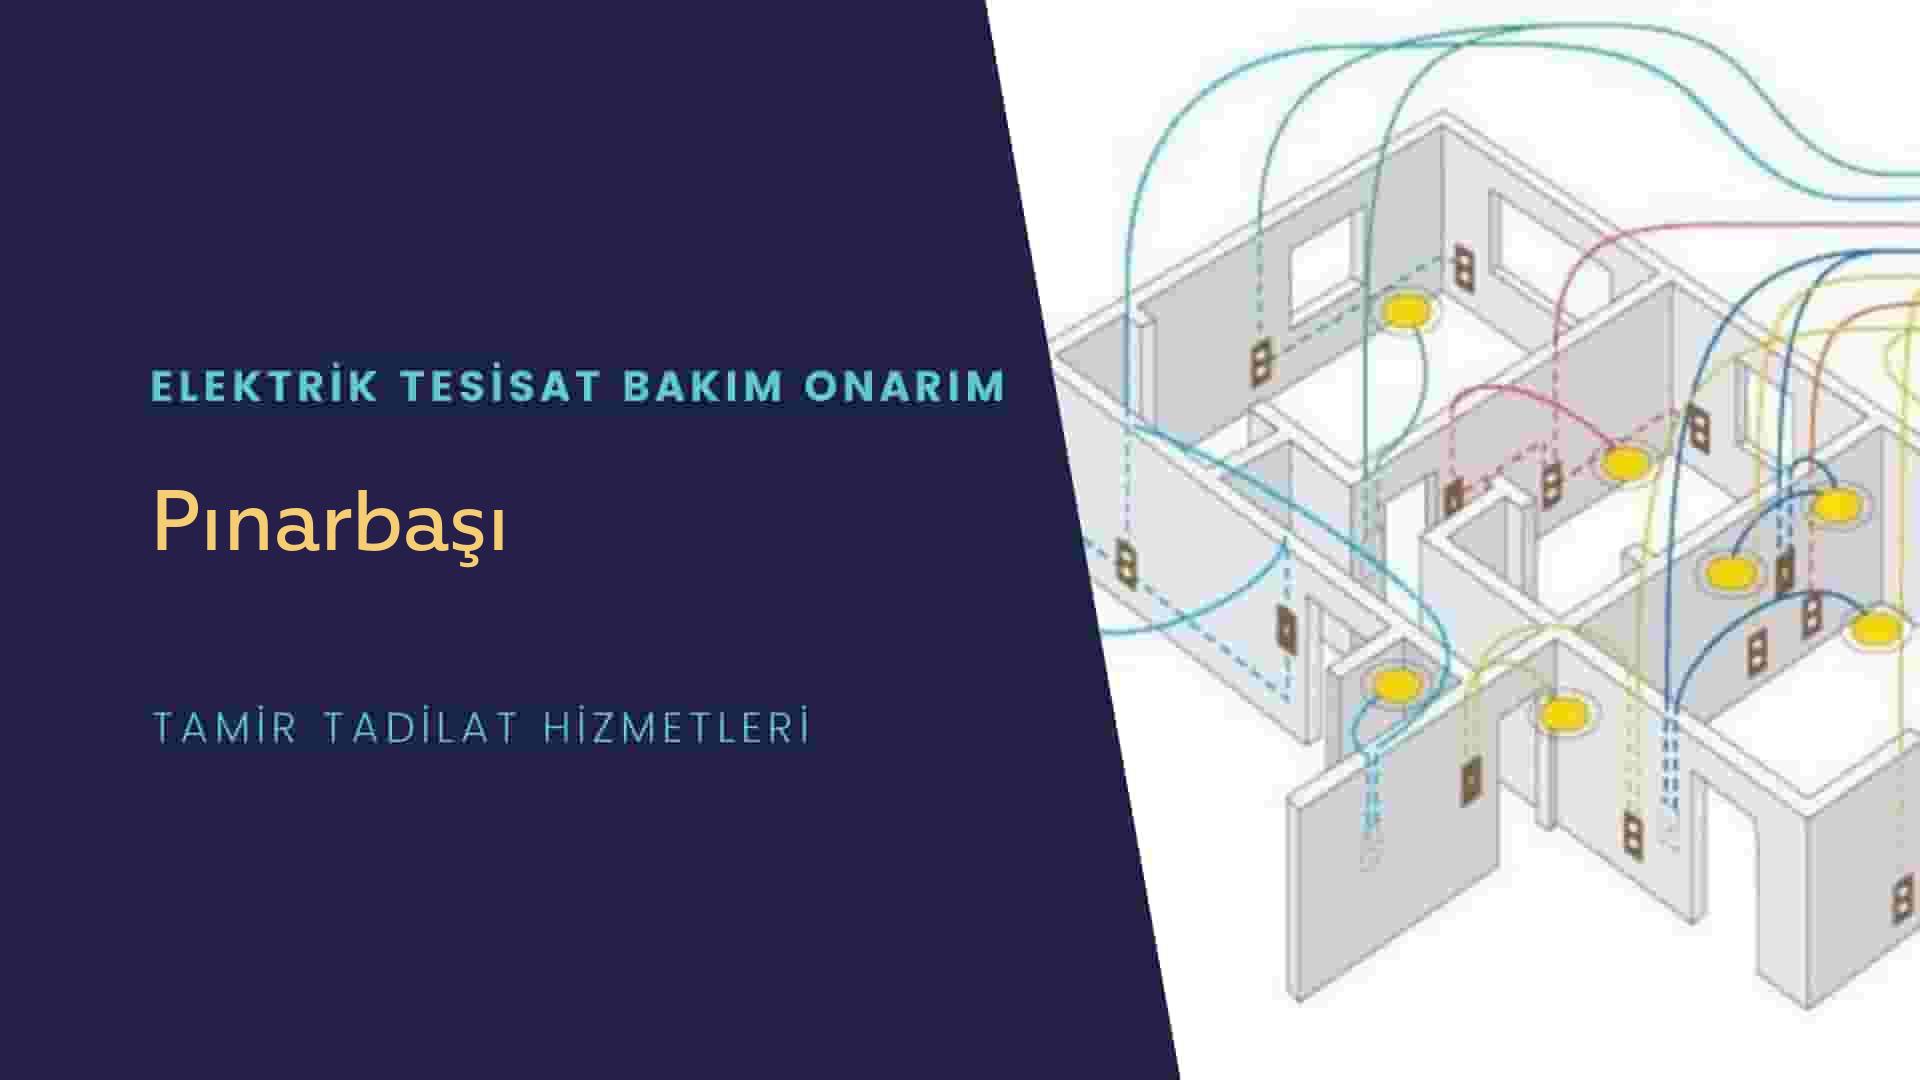 Pınarbaşı'nda elektrik tesisatı ustalarımı arıyorsunuz doğru adrestenizi Pınarbaşı elektrik tesisatı ustalarımız 7/24 sizlere hizmet vermekten mutluluk duyar.